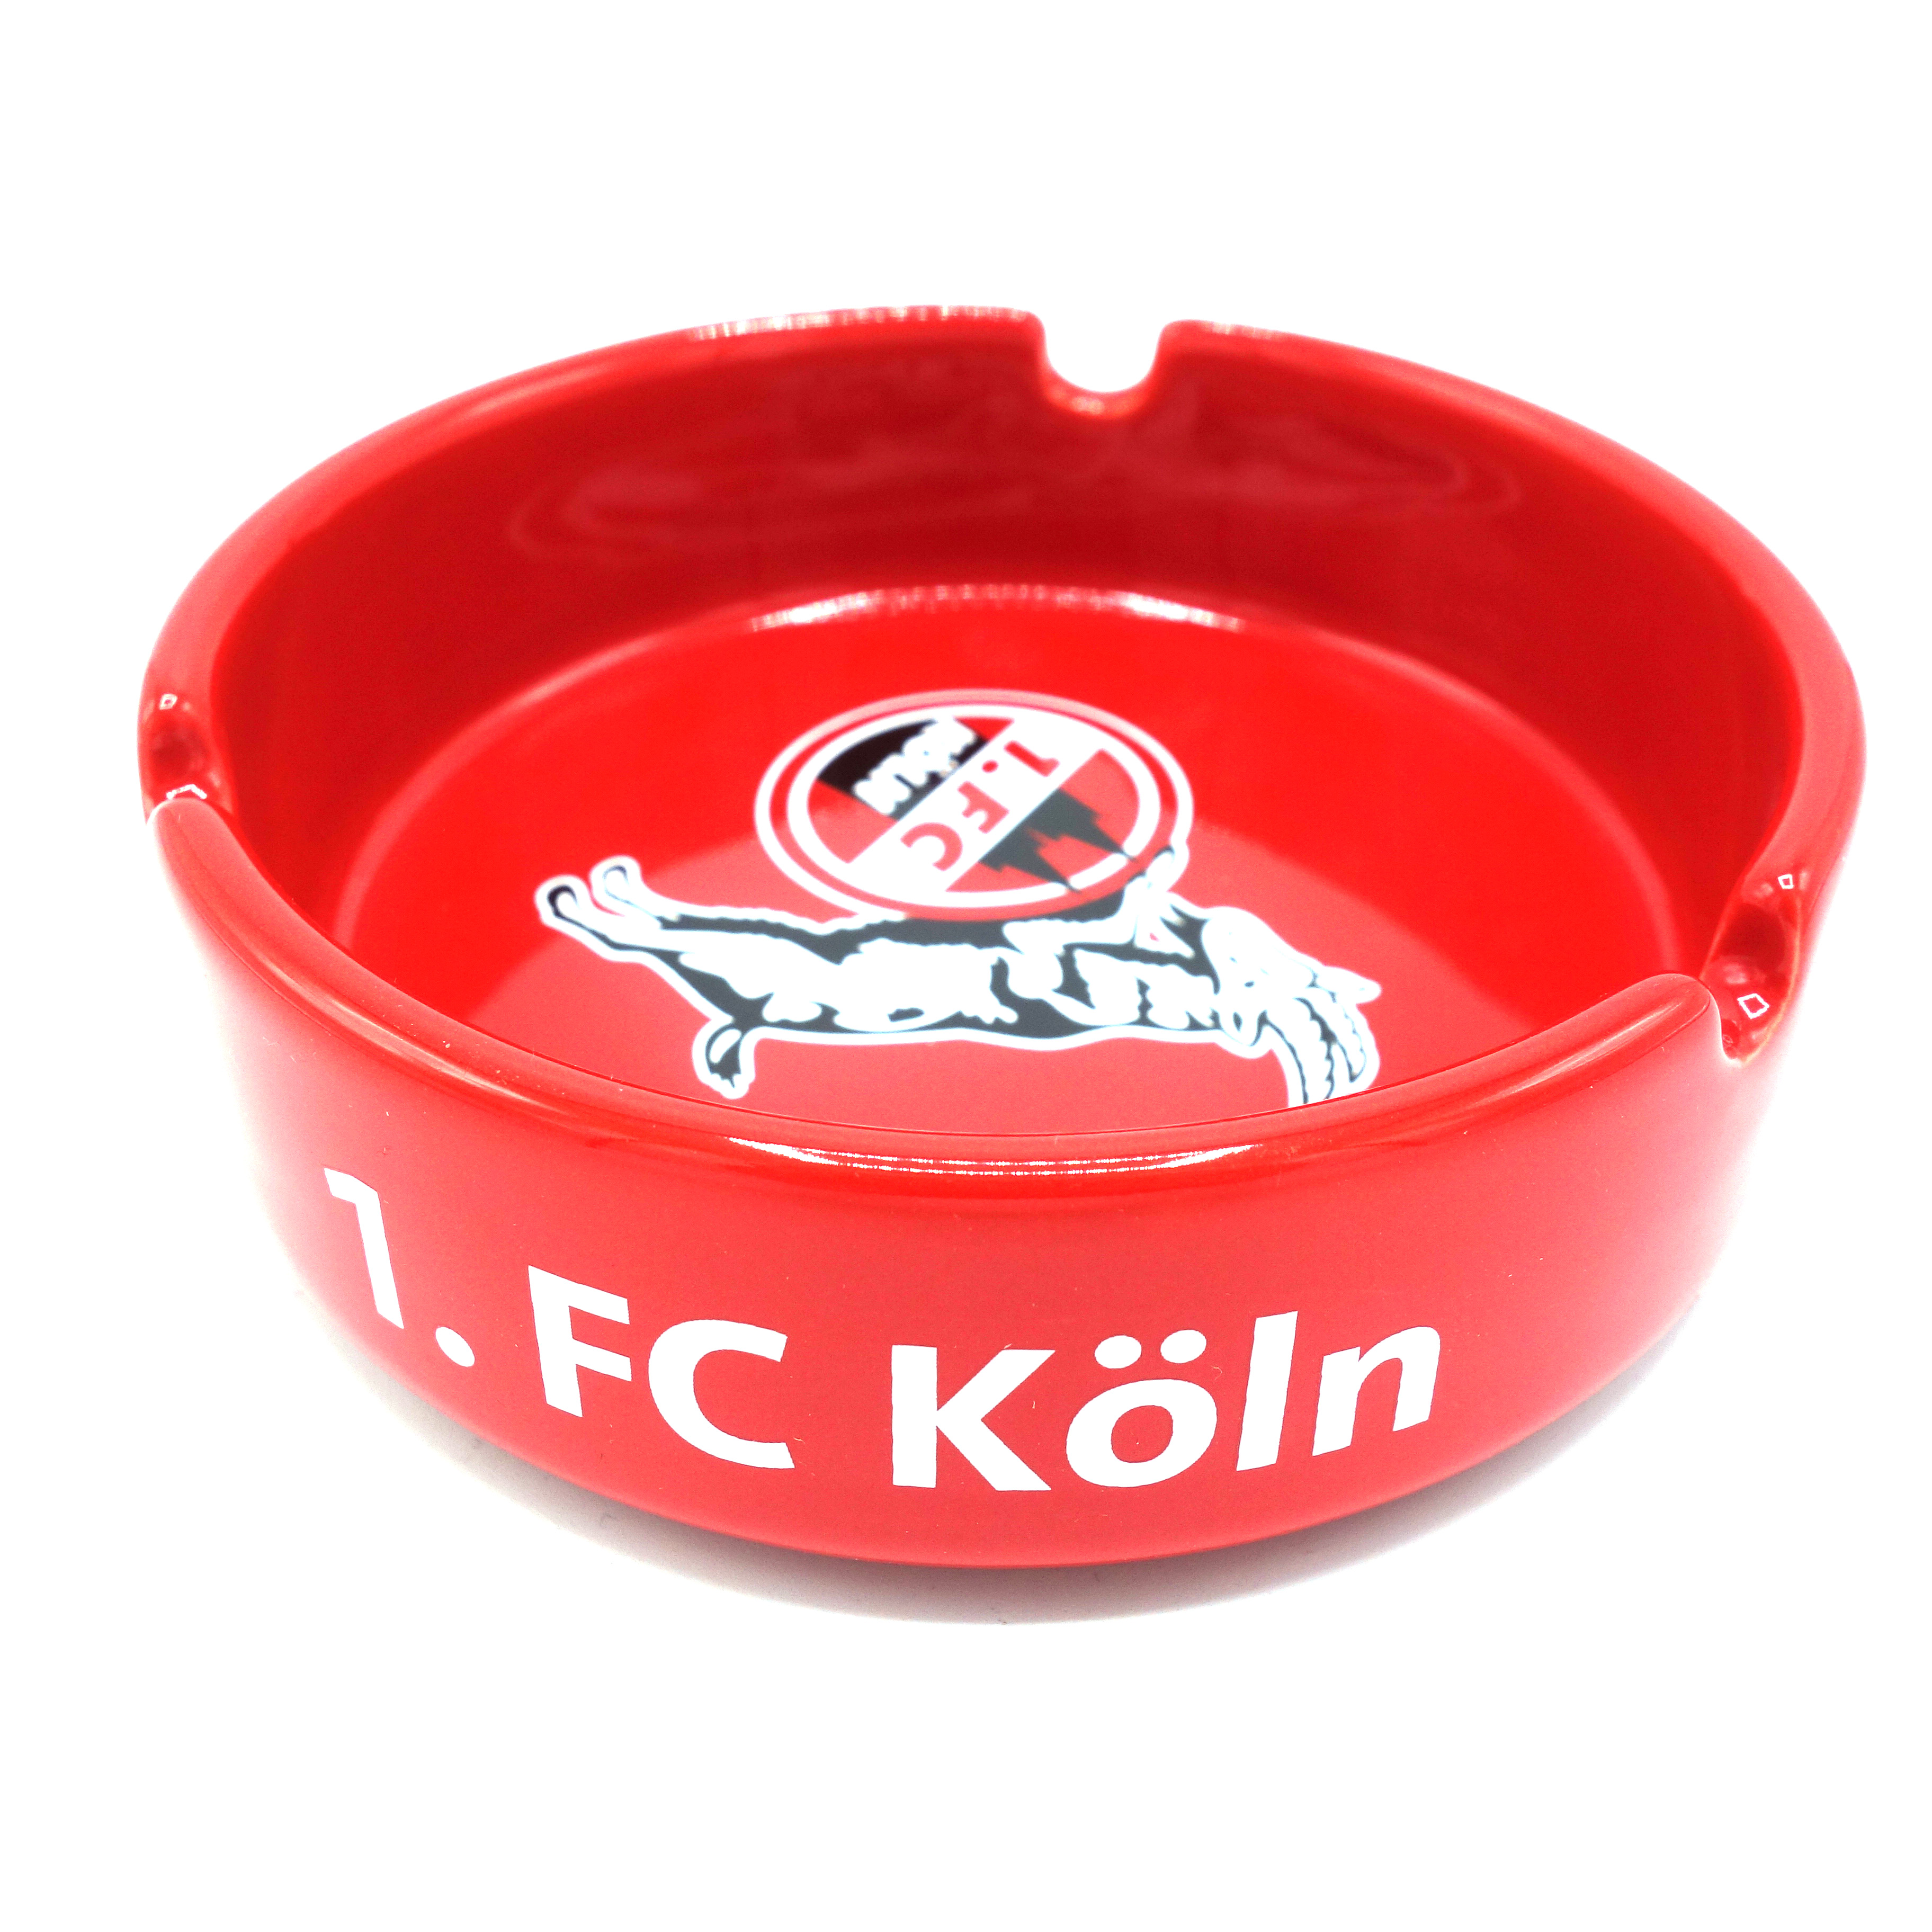 1.FC Köln Aschenbecher Rot Logo